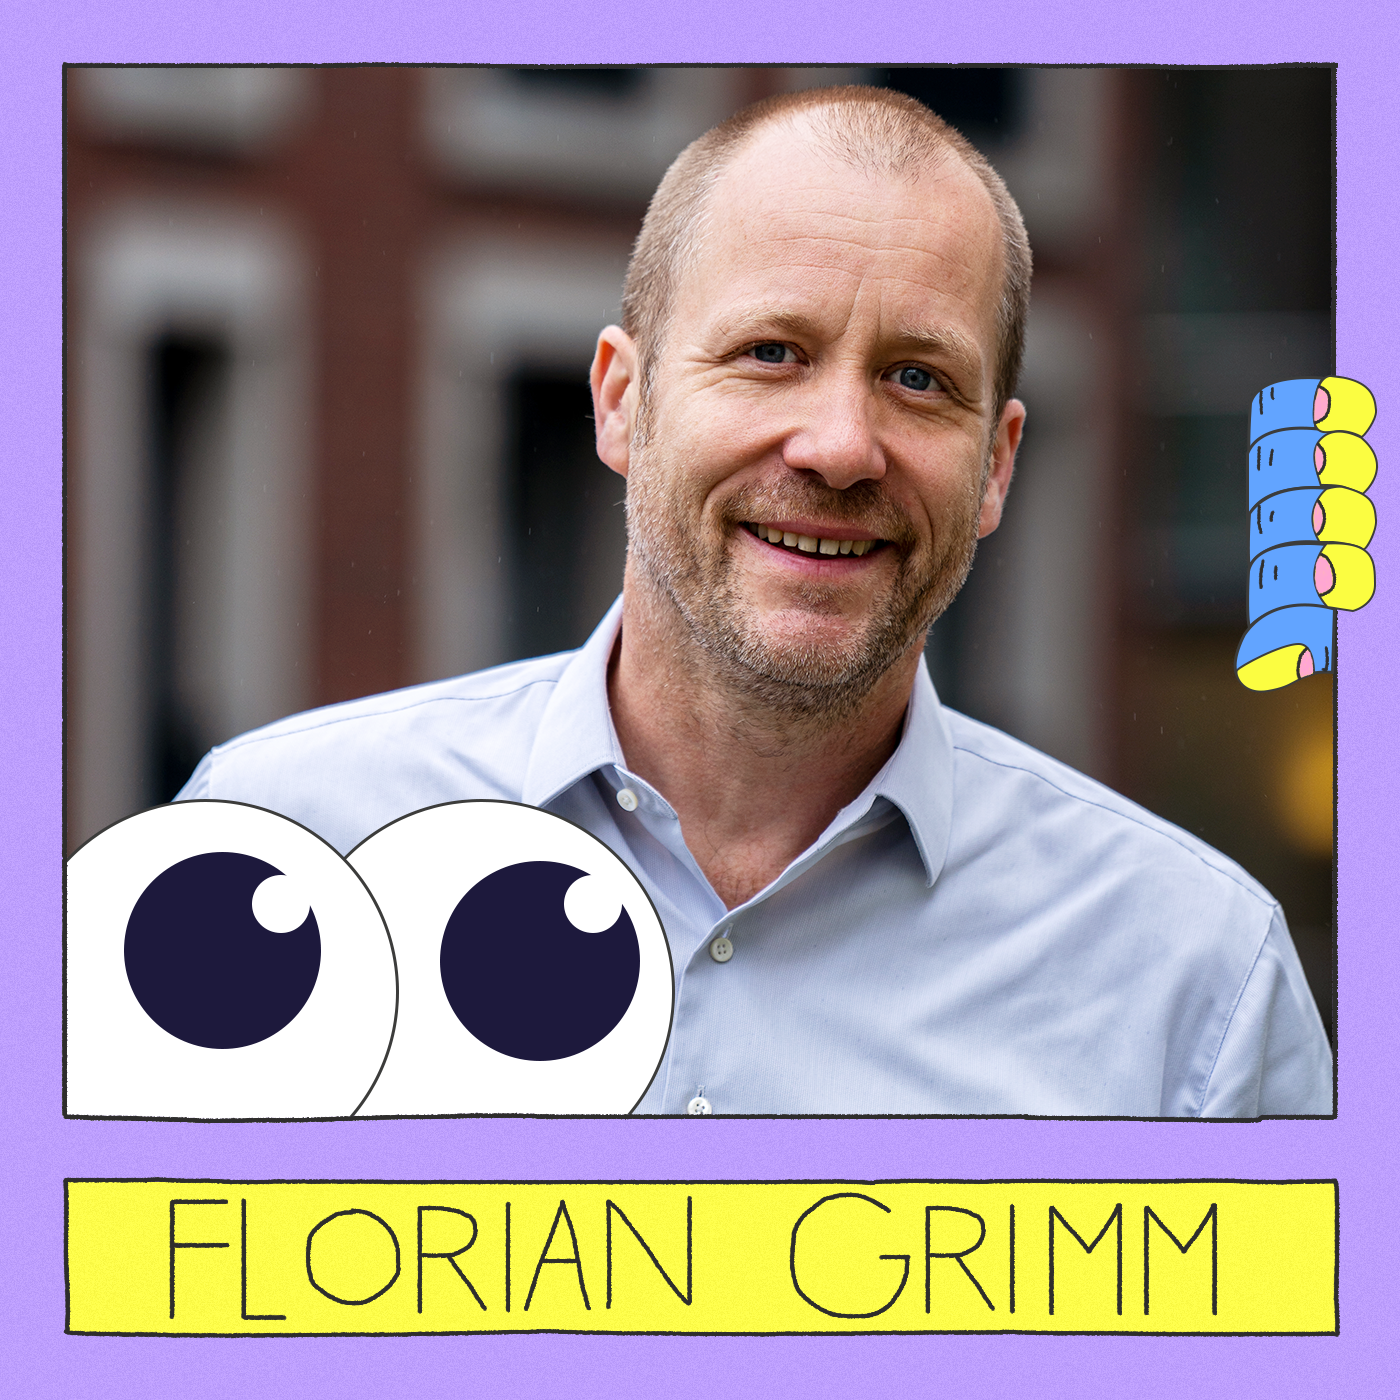 Florian_Grimm-1